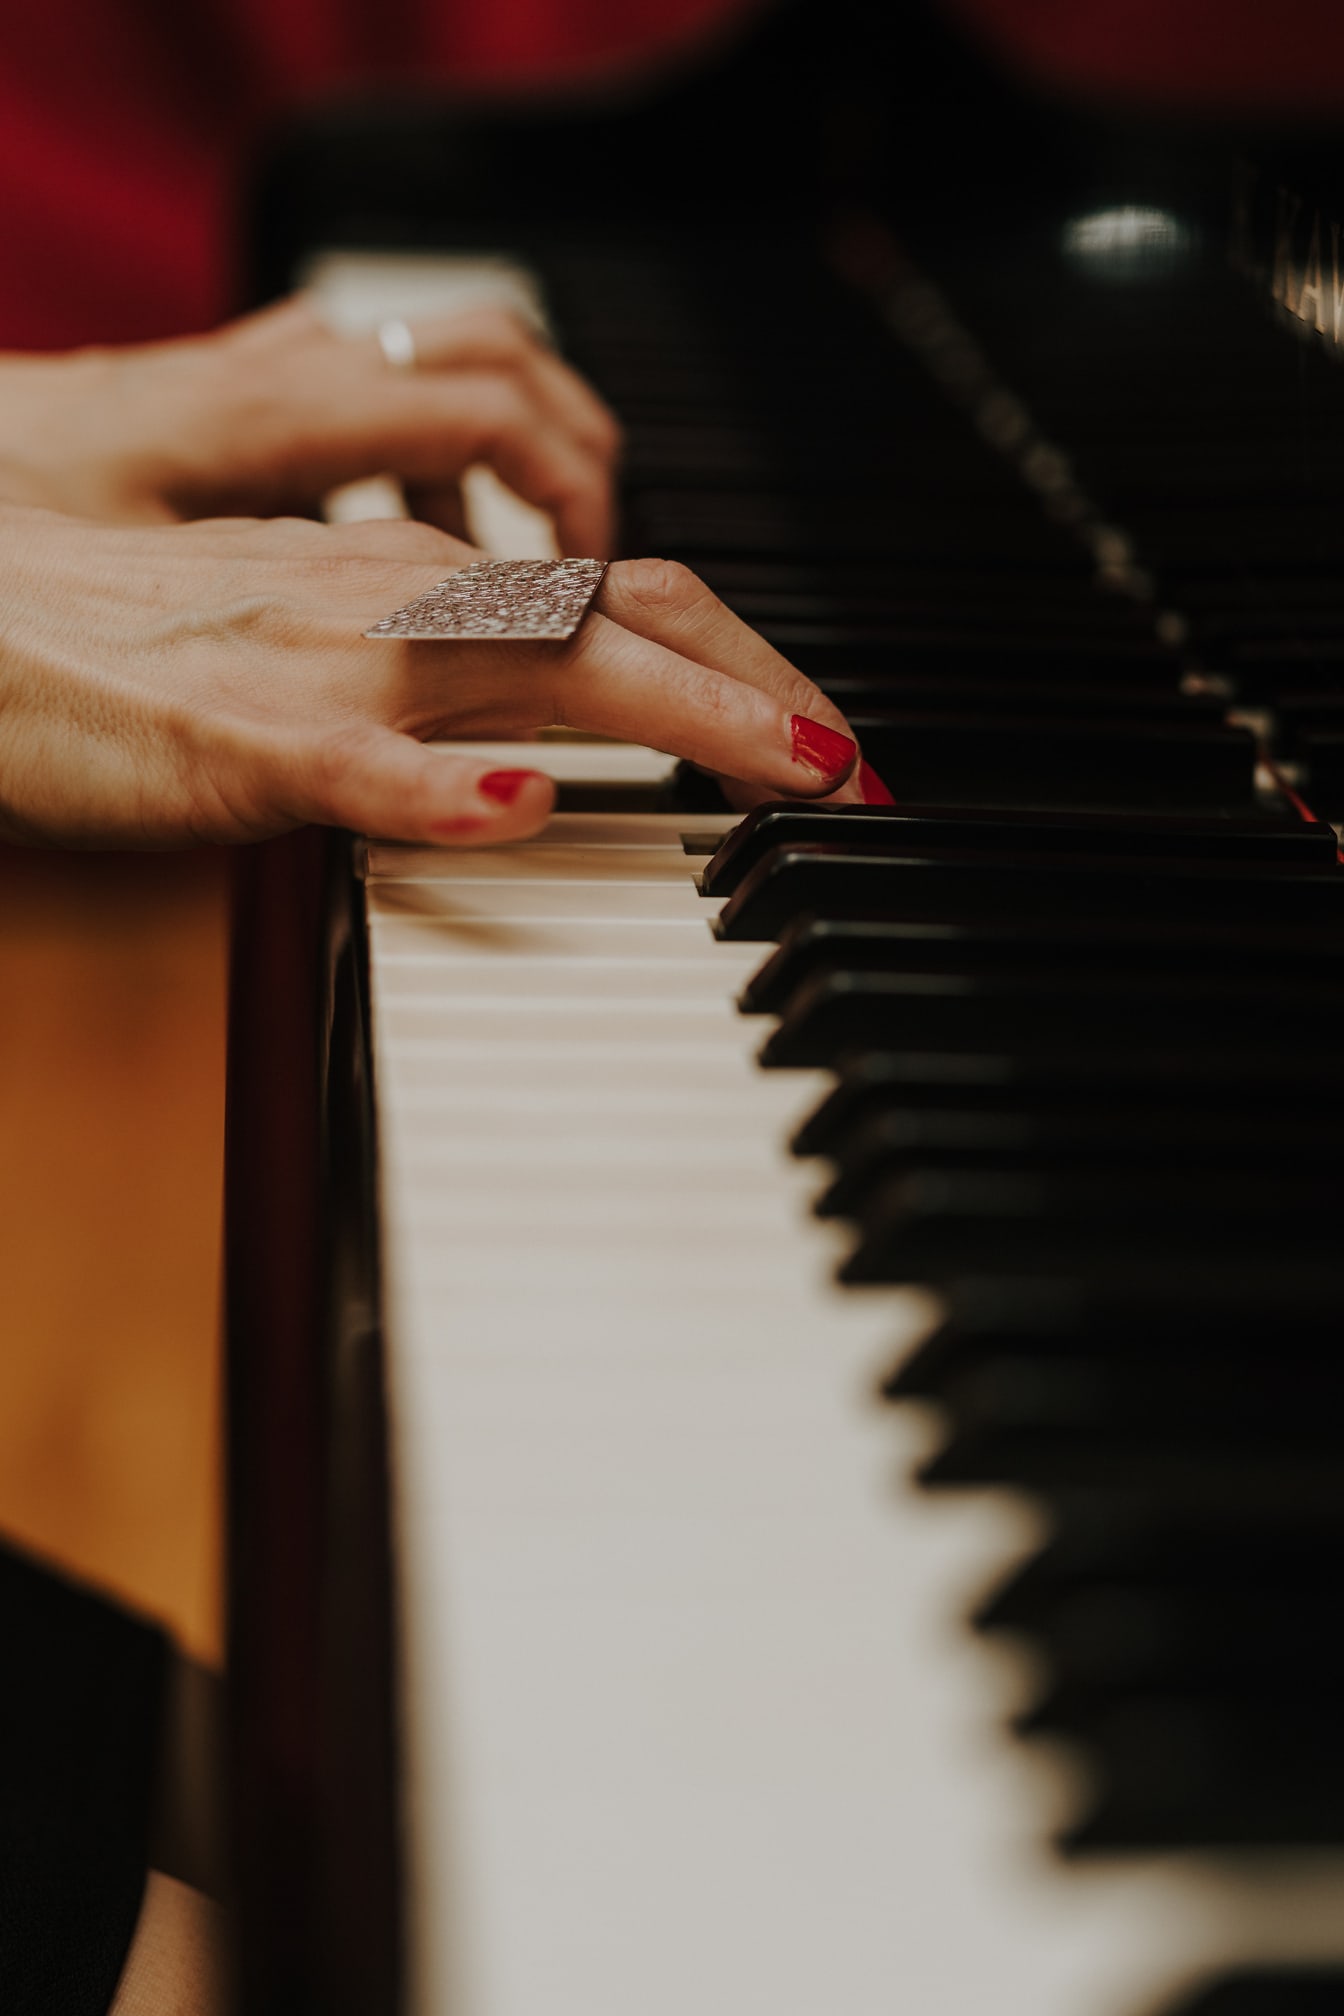 ภาพระยะใกล้ของมือเล่นเปียโนด้วยยาทาเล็บสีแดงที่นิ้ว